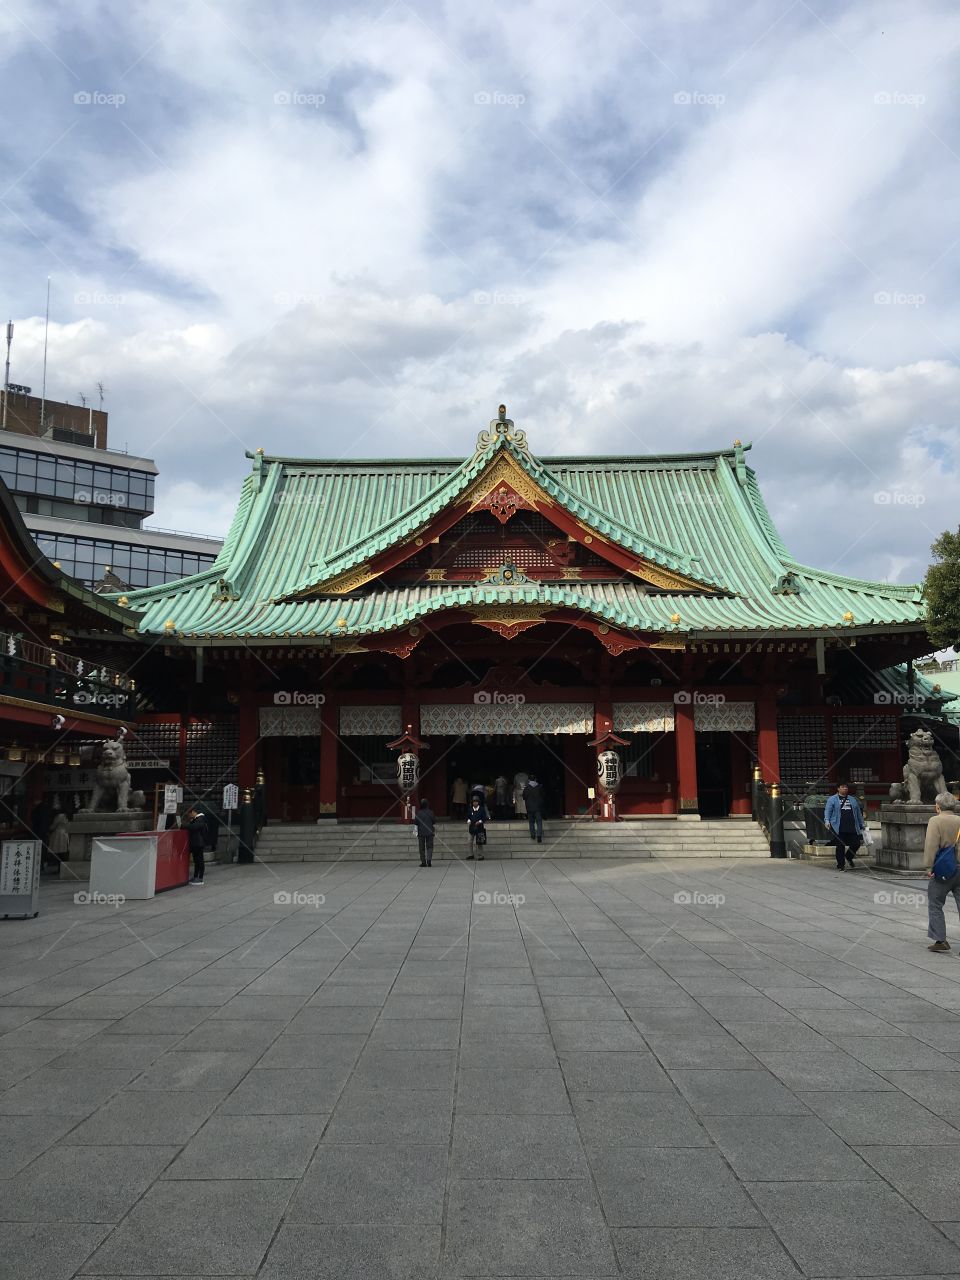 Kanda shrine in Tokyo